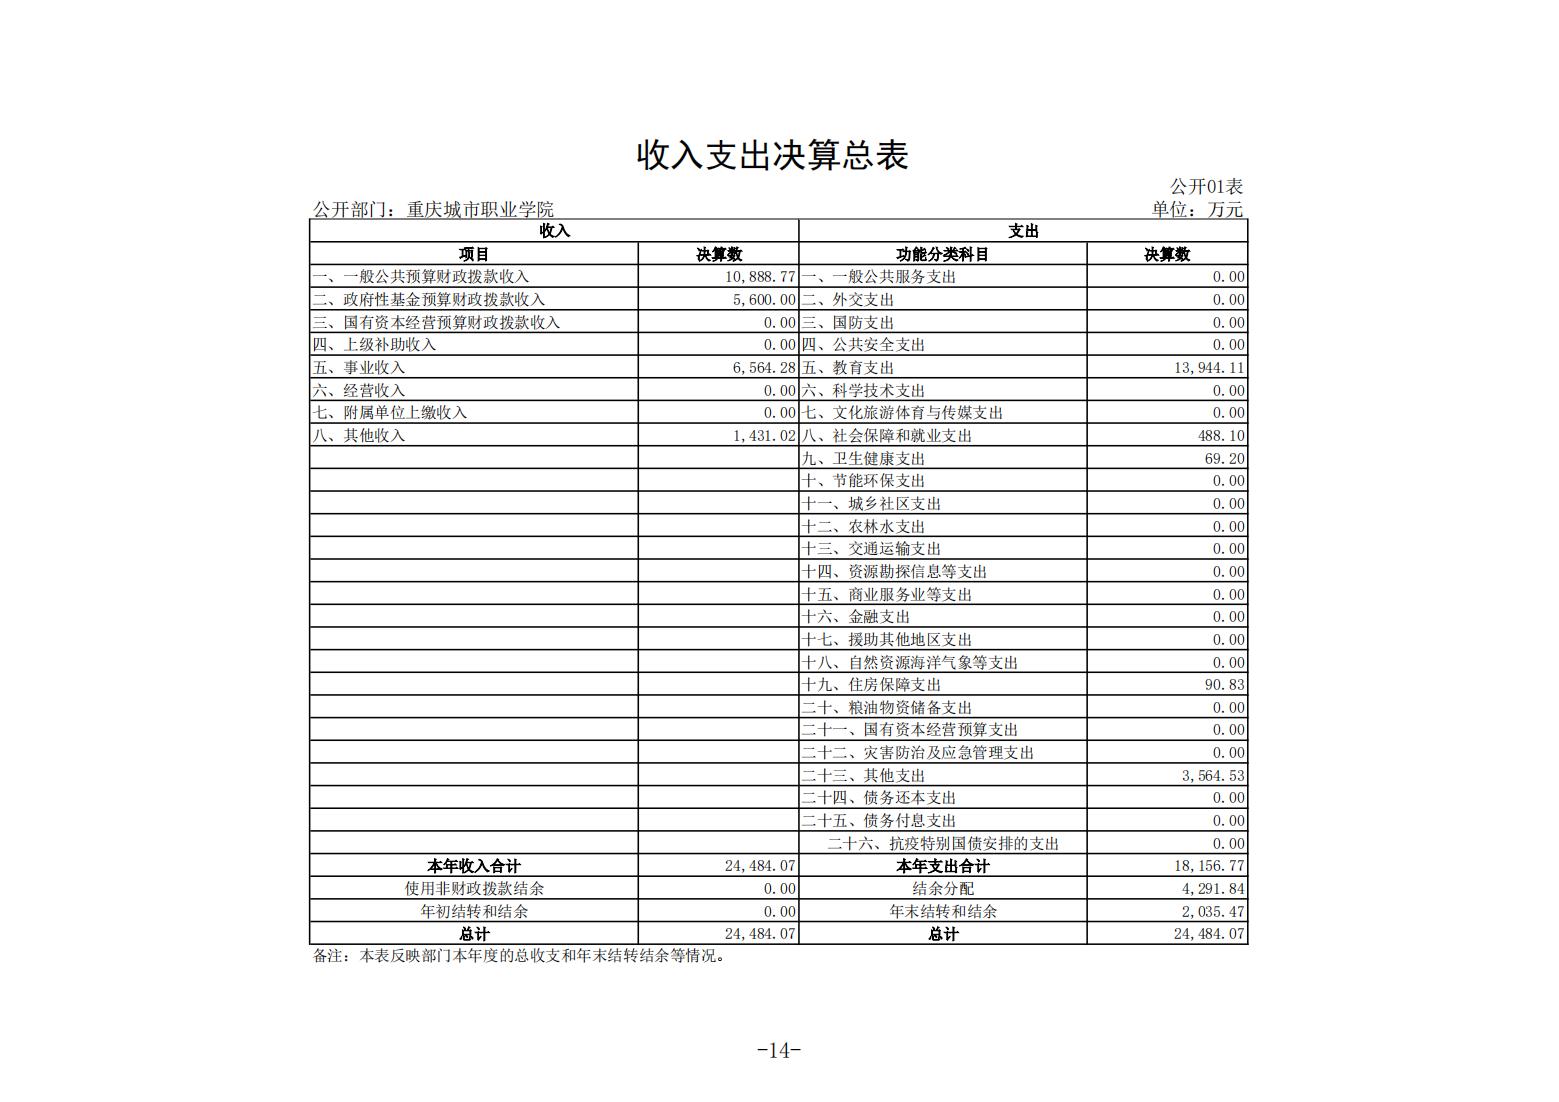 重庆城市职业学院2021年度部门决算情况说明_13.jpg